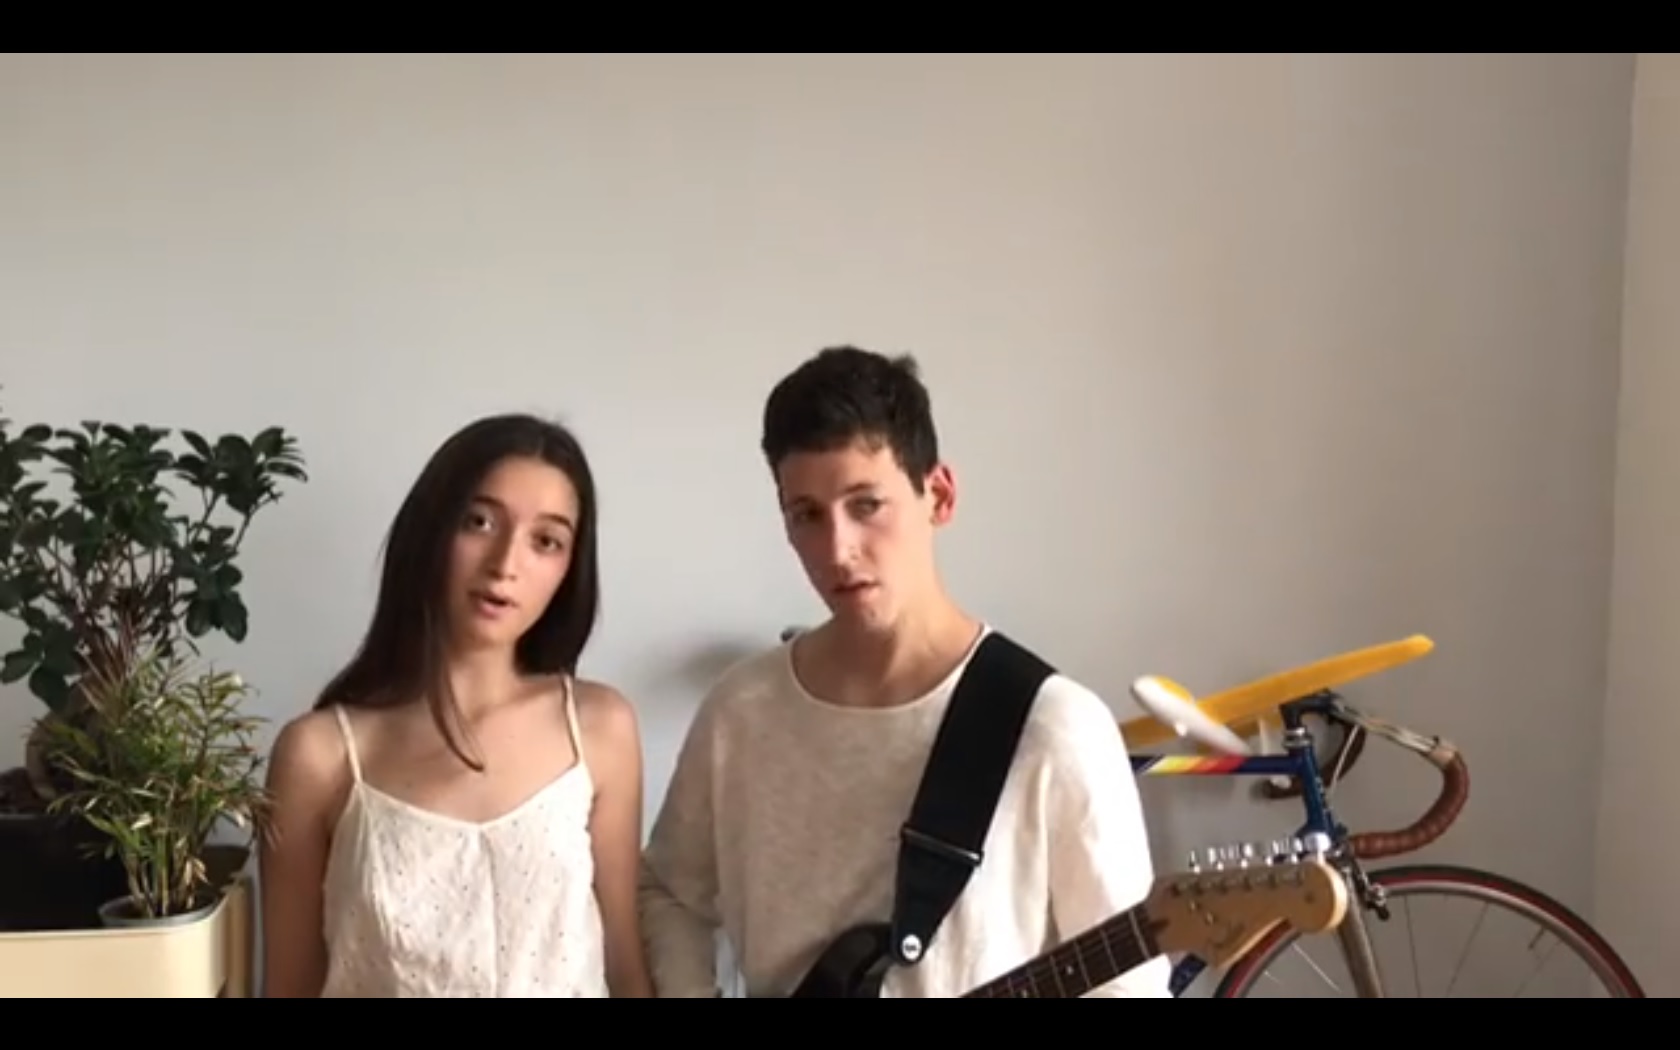  VÍDEO: Zala e Gašper (Eslovénia) interpretam parte de ‘Sebi’ em Inglês